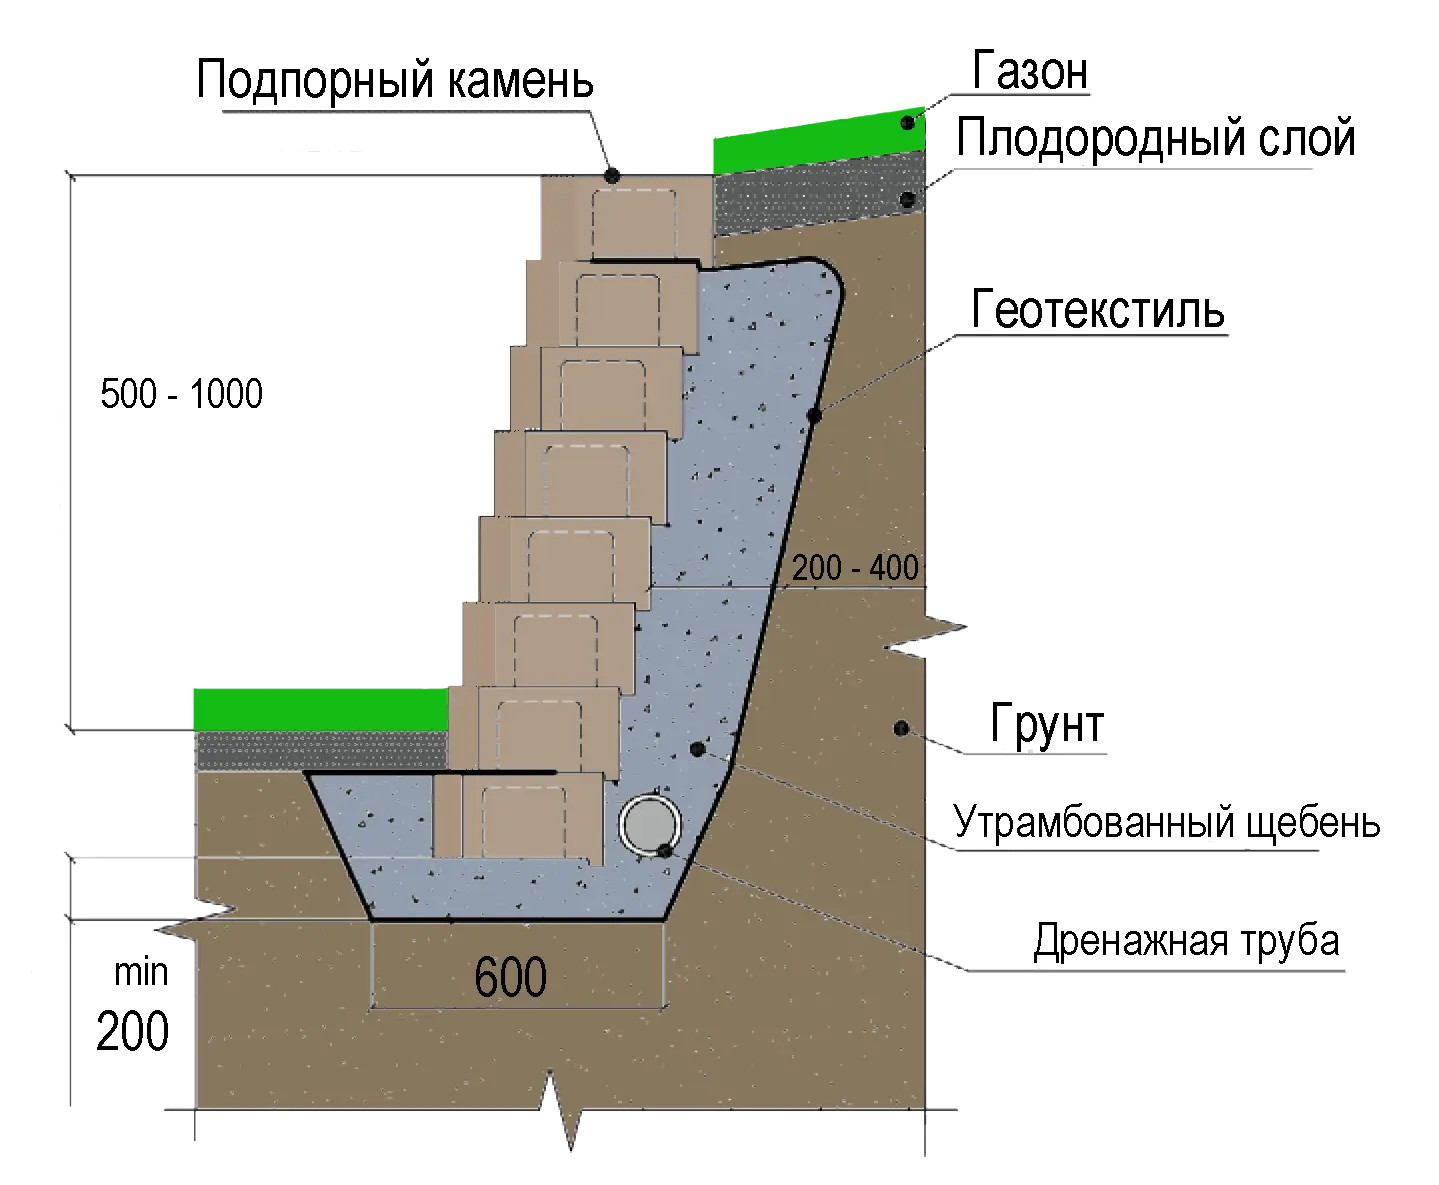 Подпорная стена из блоков фбс: требования, какой материал подойдет, расходники и инструменты для строительства, инструкция по возведению